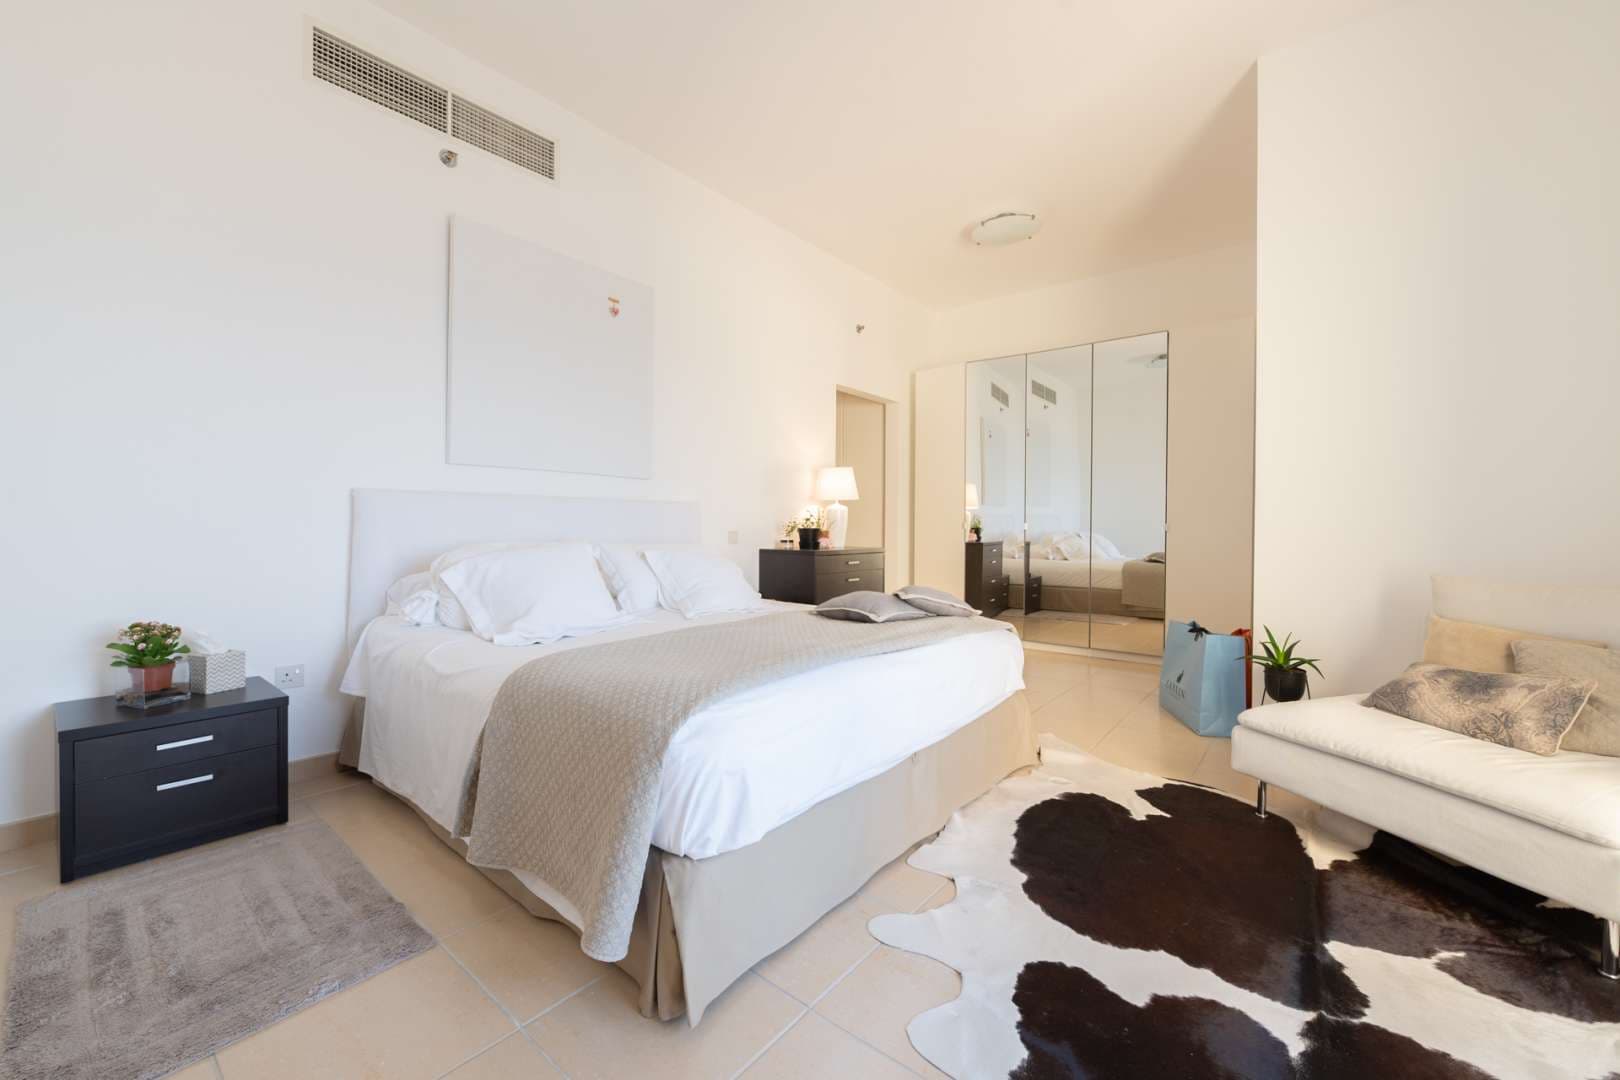 2 Bedroom Apartment For Rent Shams Lp05181 21af6213b9f1c000.jpg